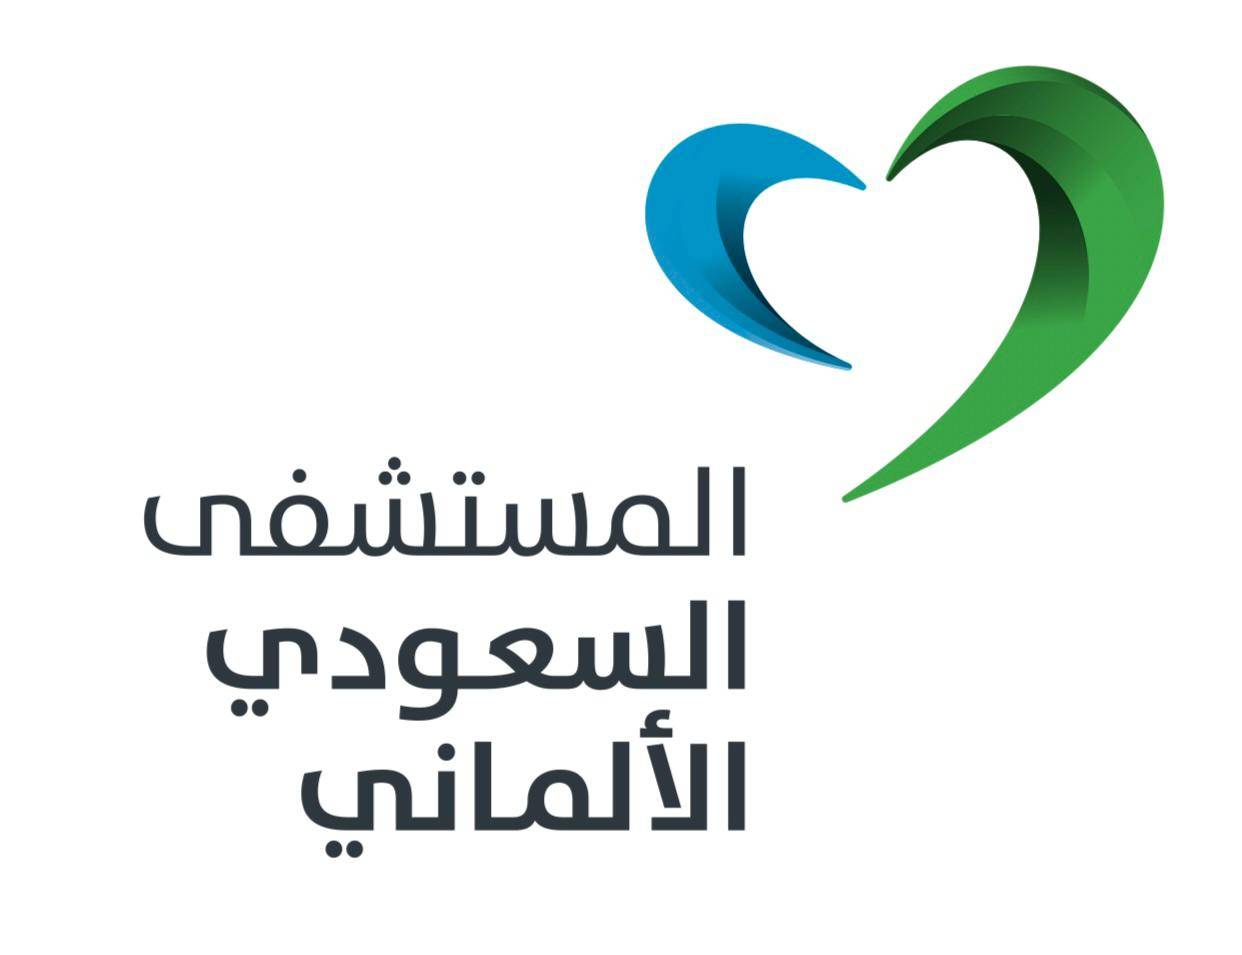 مجموعة مستشفيات السعودي الألماني - وظائف إدارية بمجموعة مستشفيات السعودي الألماني للجنسين